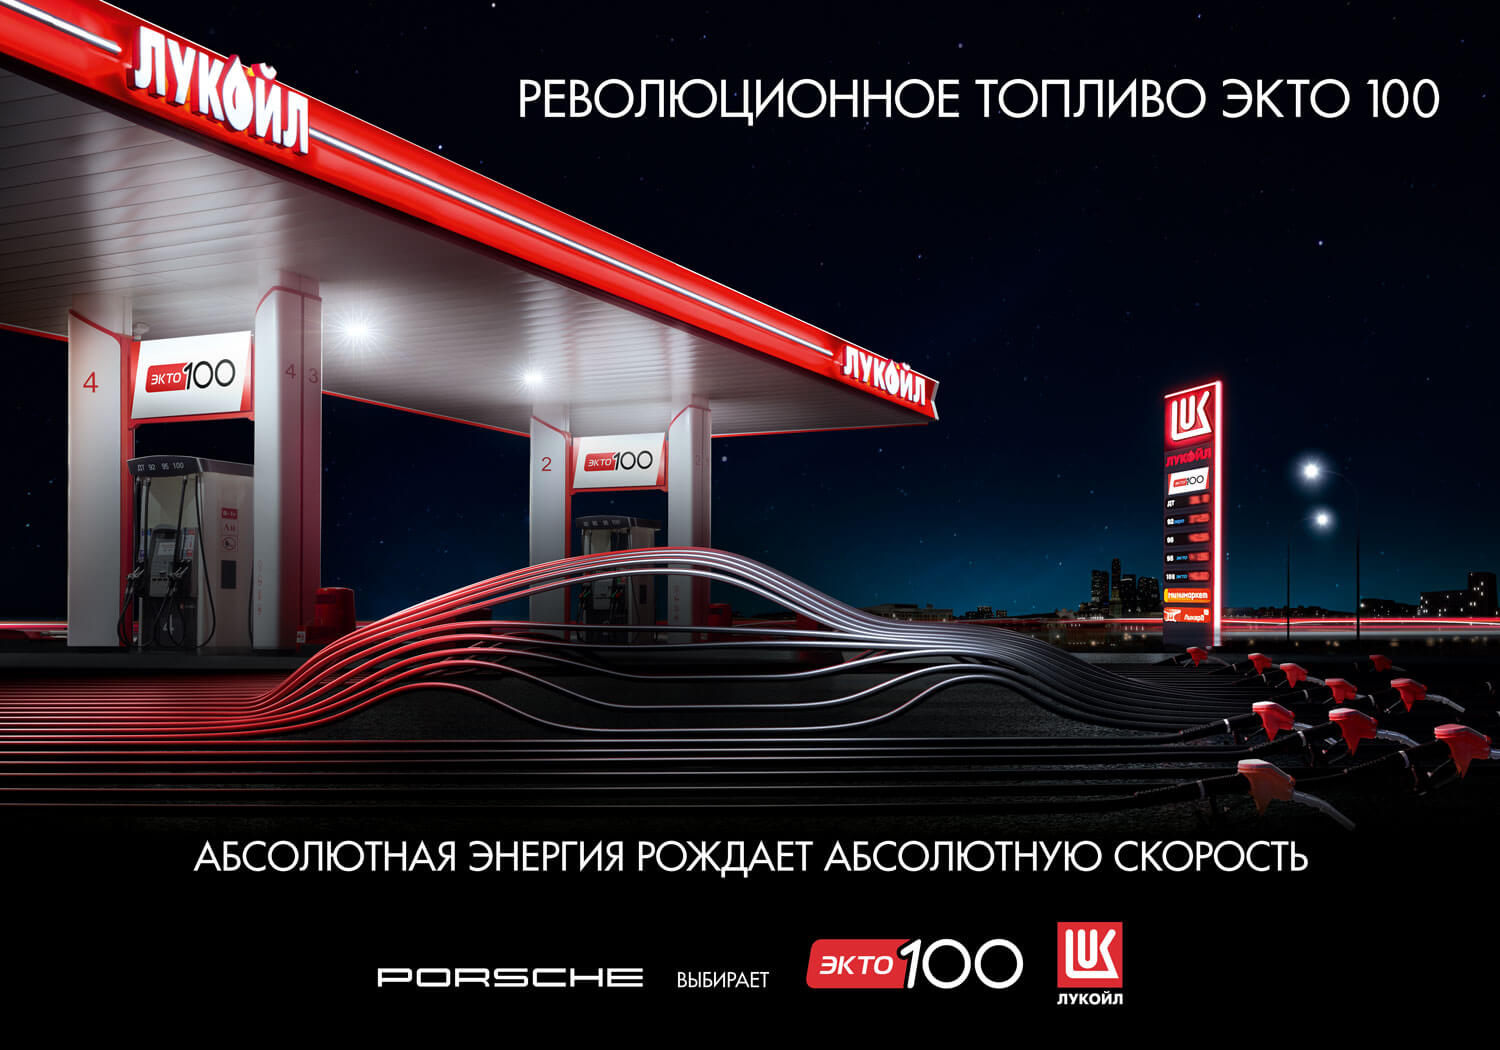 Заправочная станция «ЛУКОЙЛ» с топливом ЭКТО 100